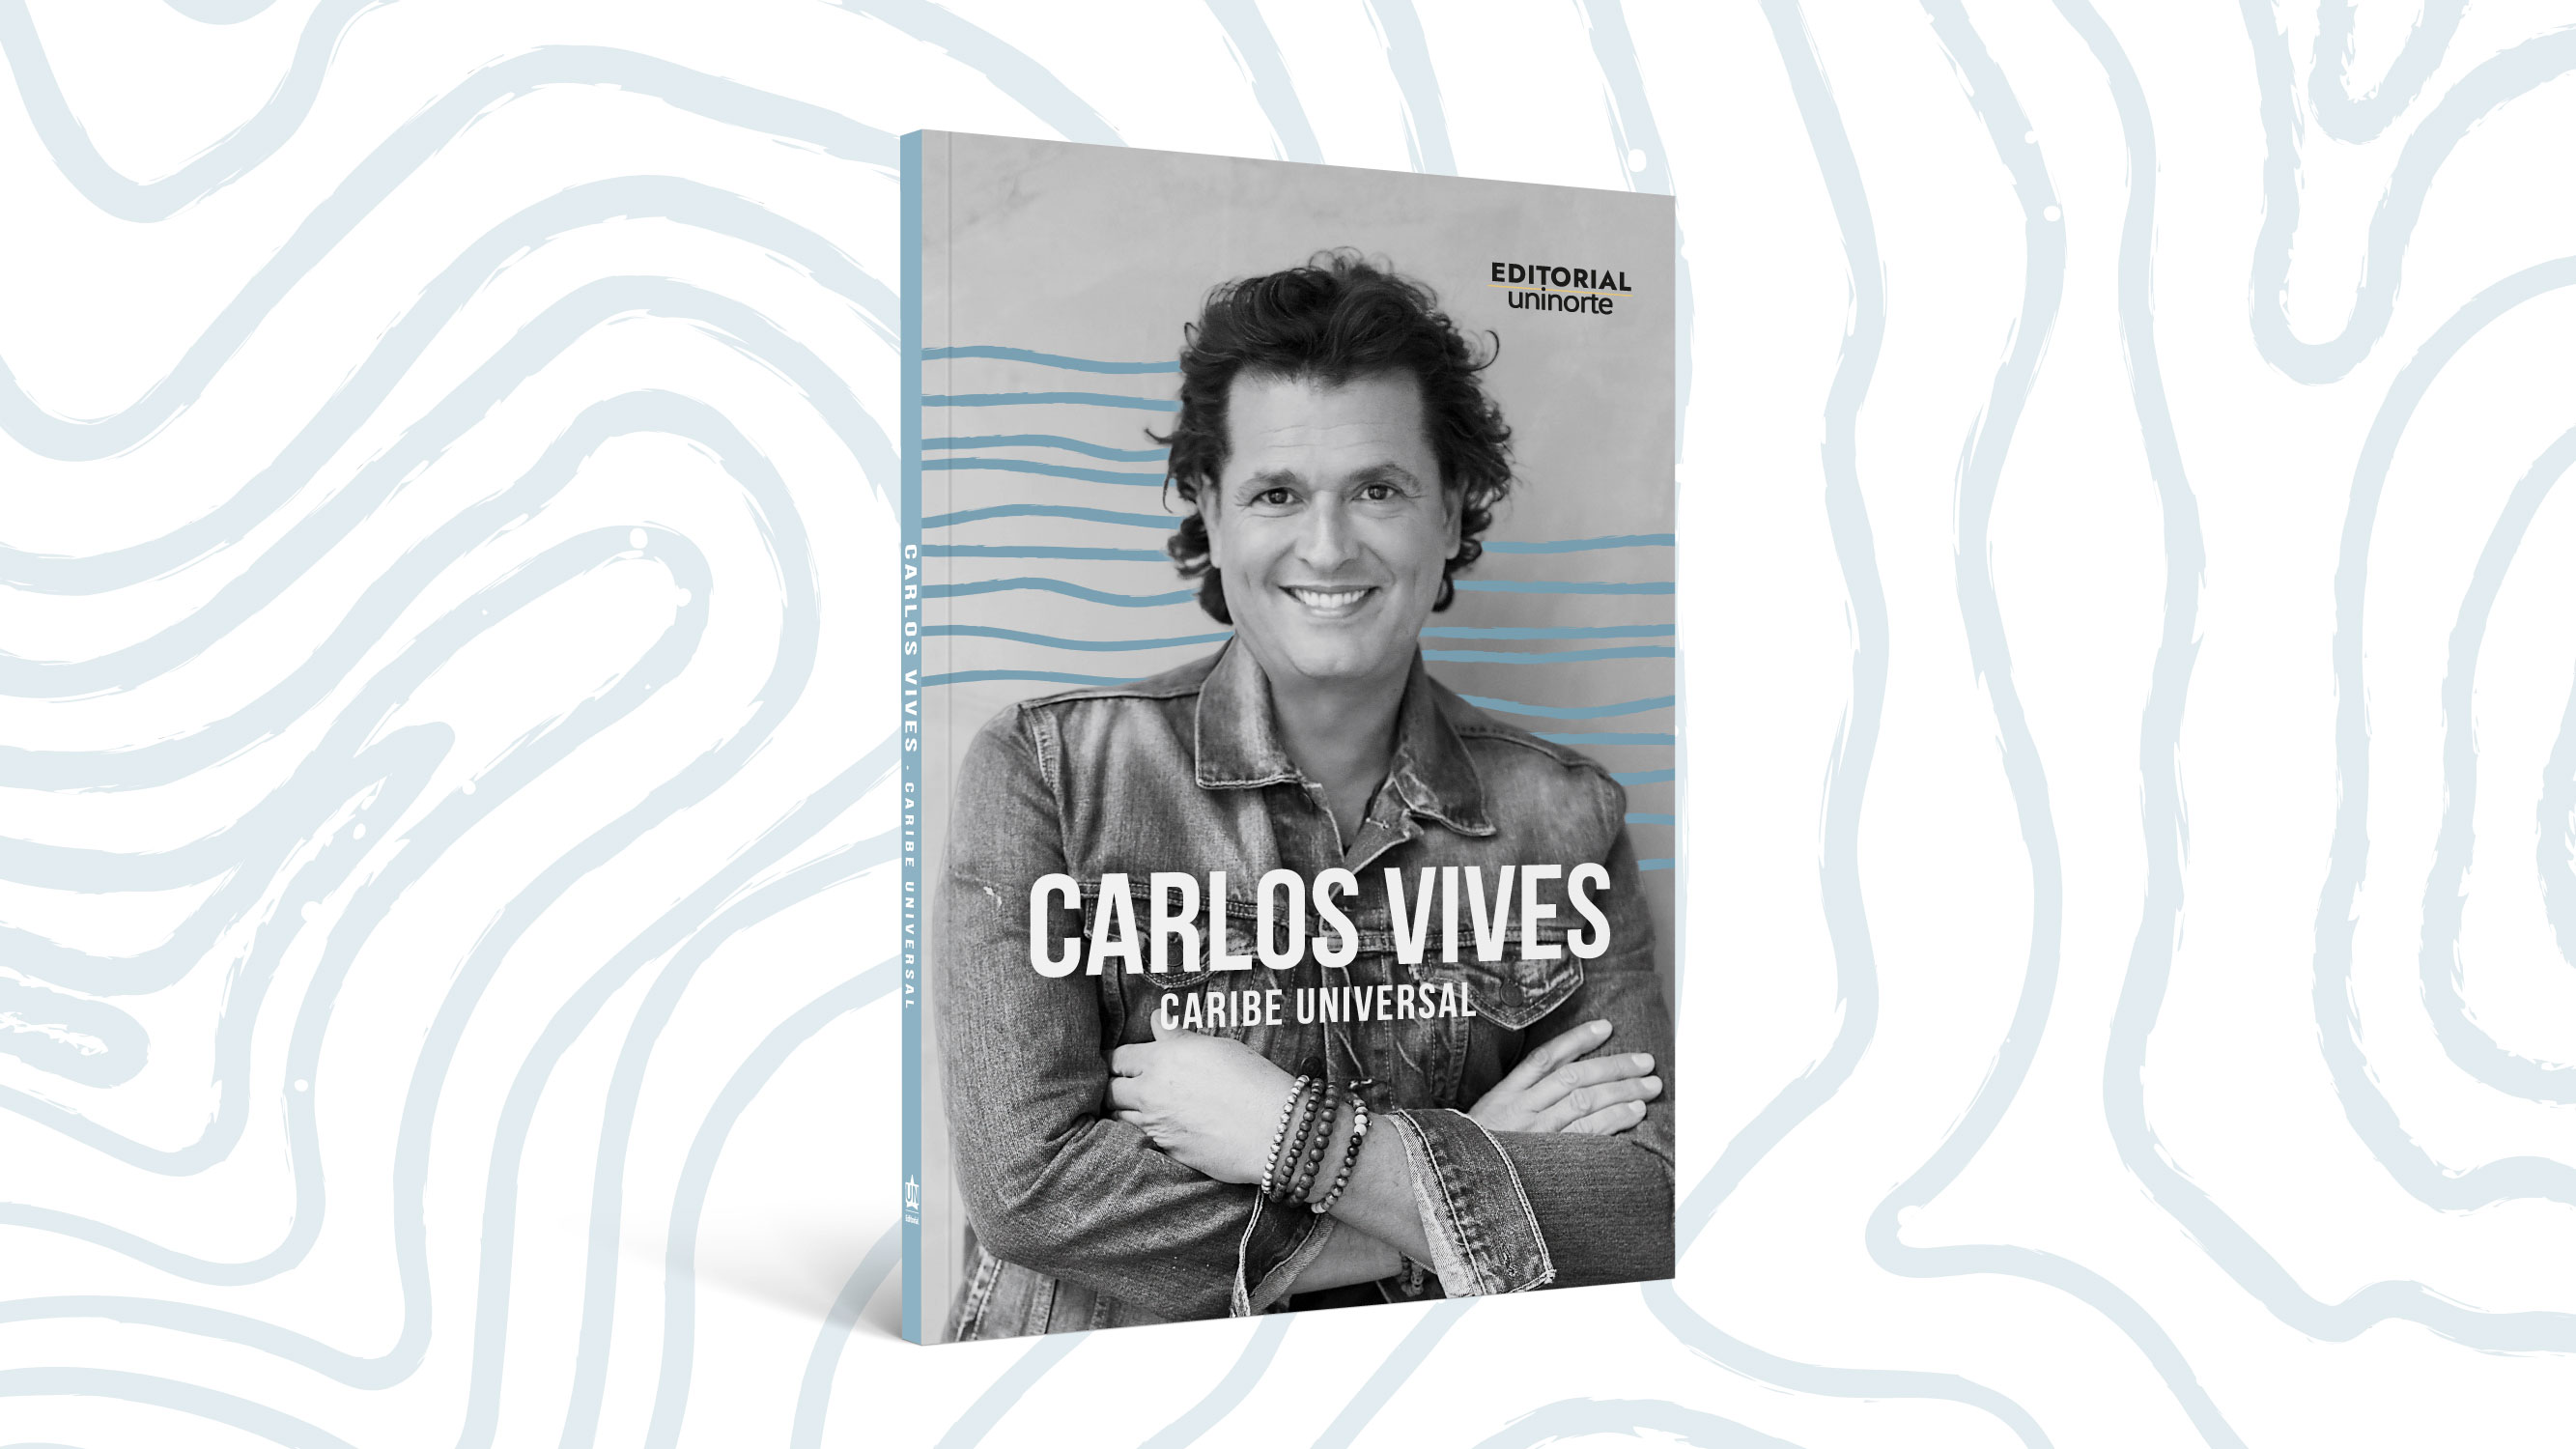 Portada del libro Carlos Vives: caribe universal, que se presentará el jueves, 28 de septiembre.